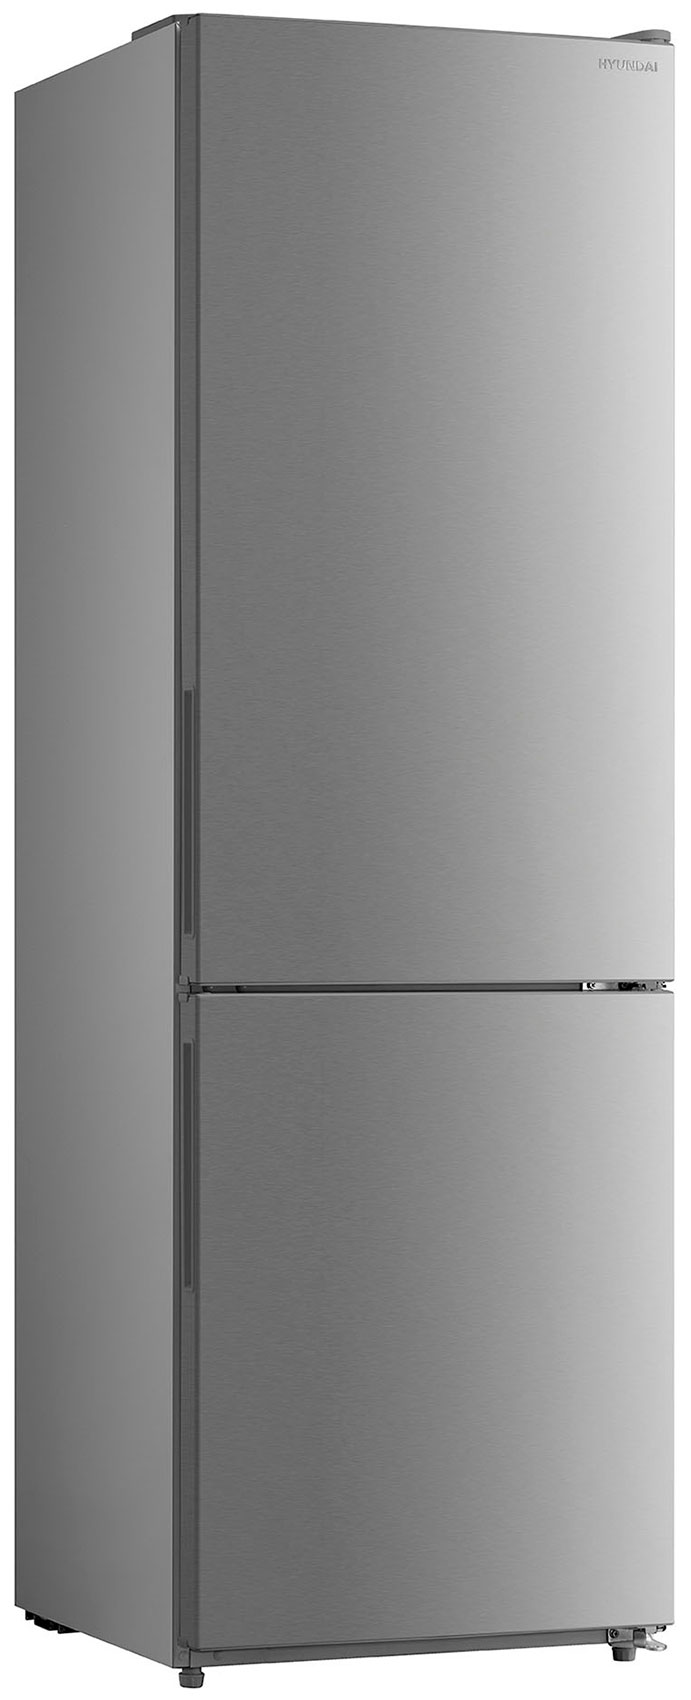 цена Двухкамерный холодильник Hyundai CC3093FIX нержавеющая сталь